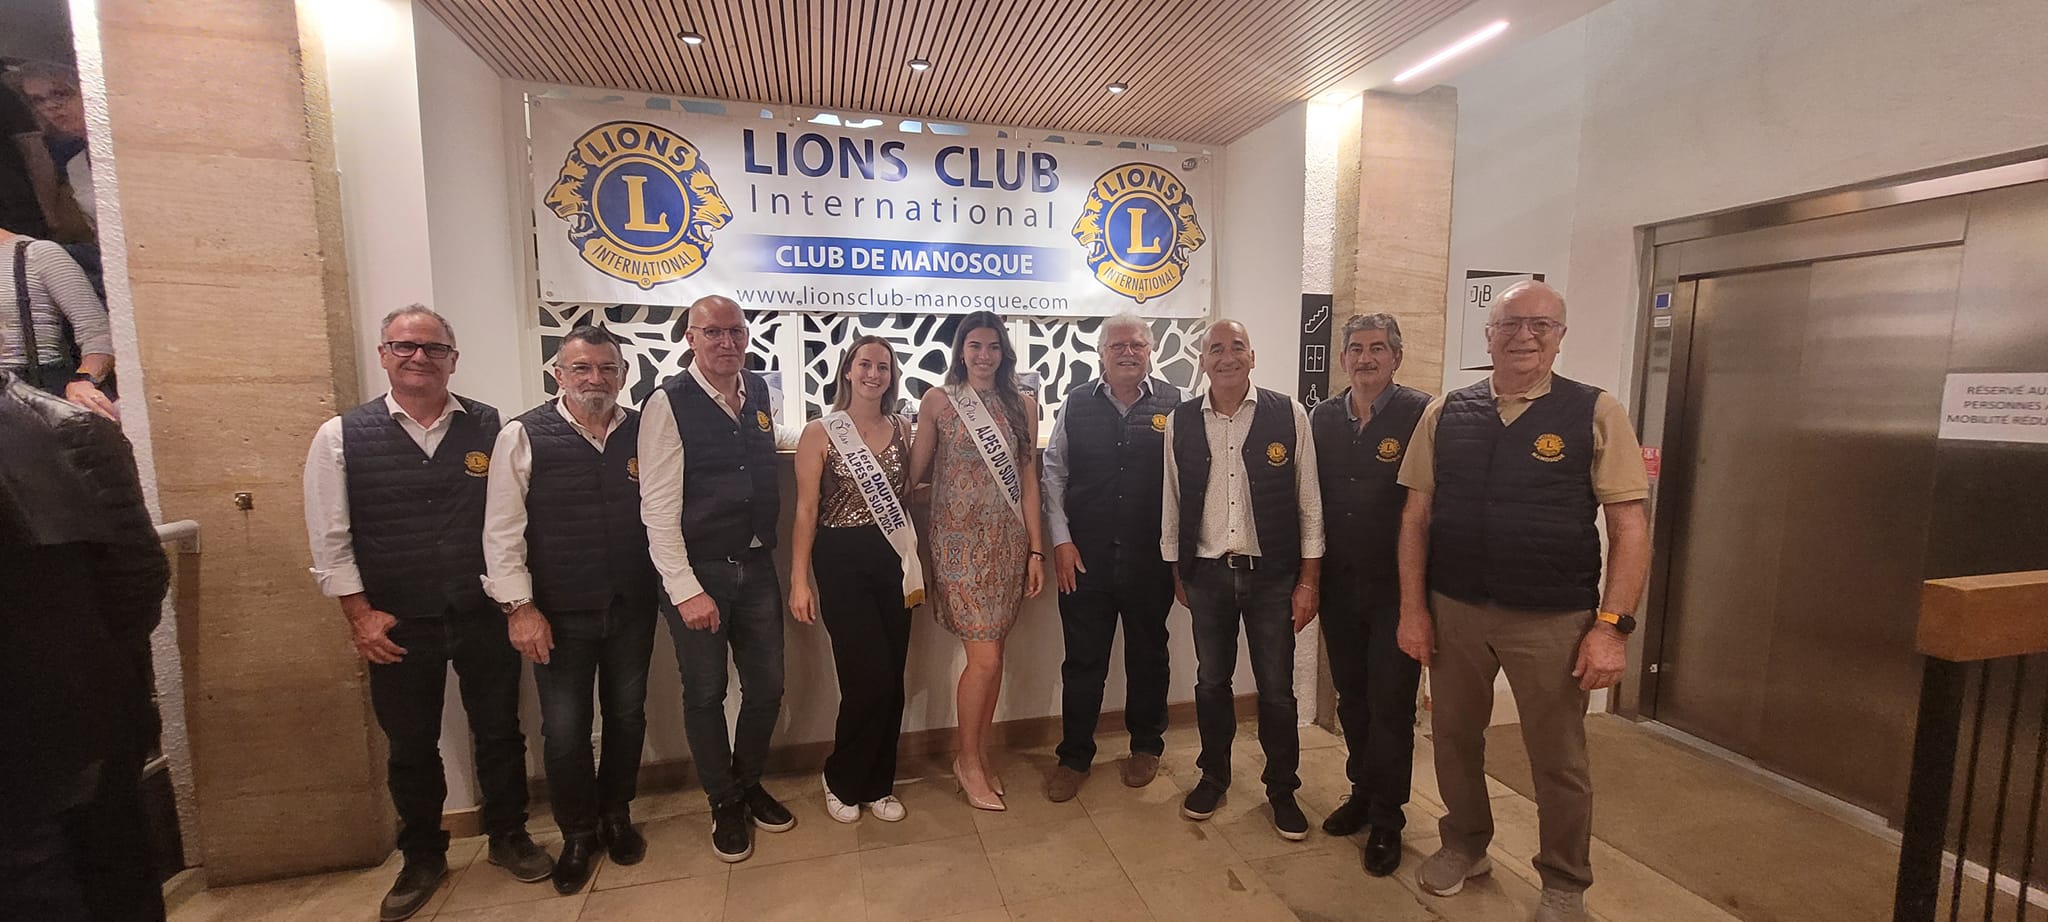 Le Lions Club de Manosque encore et toujours très actif...